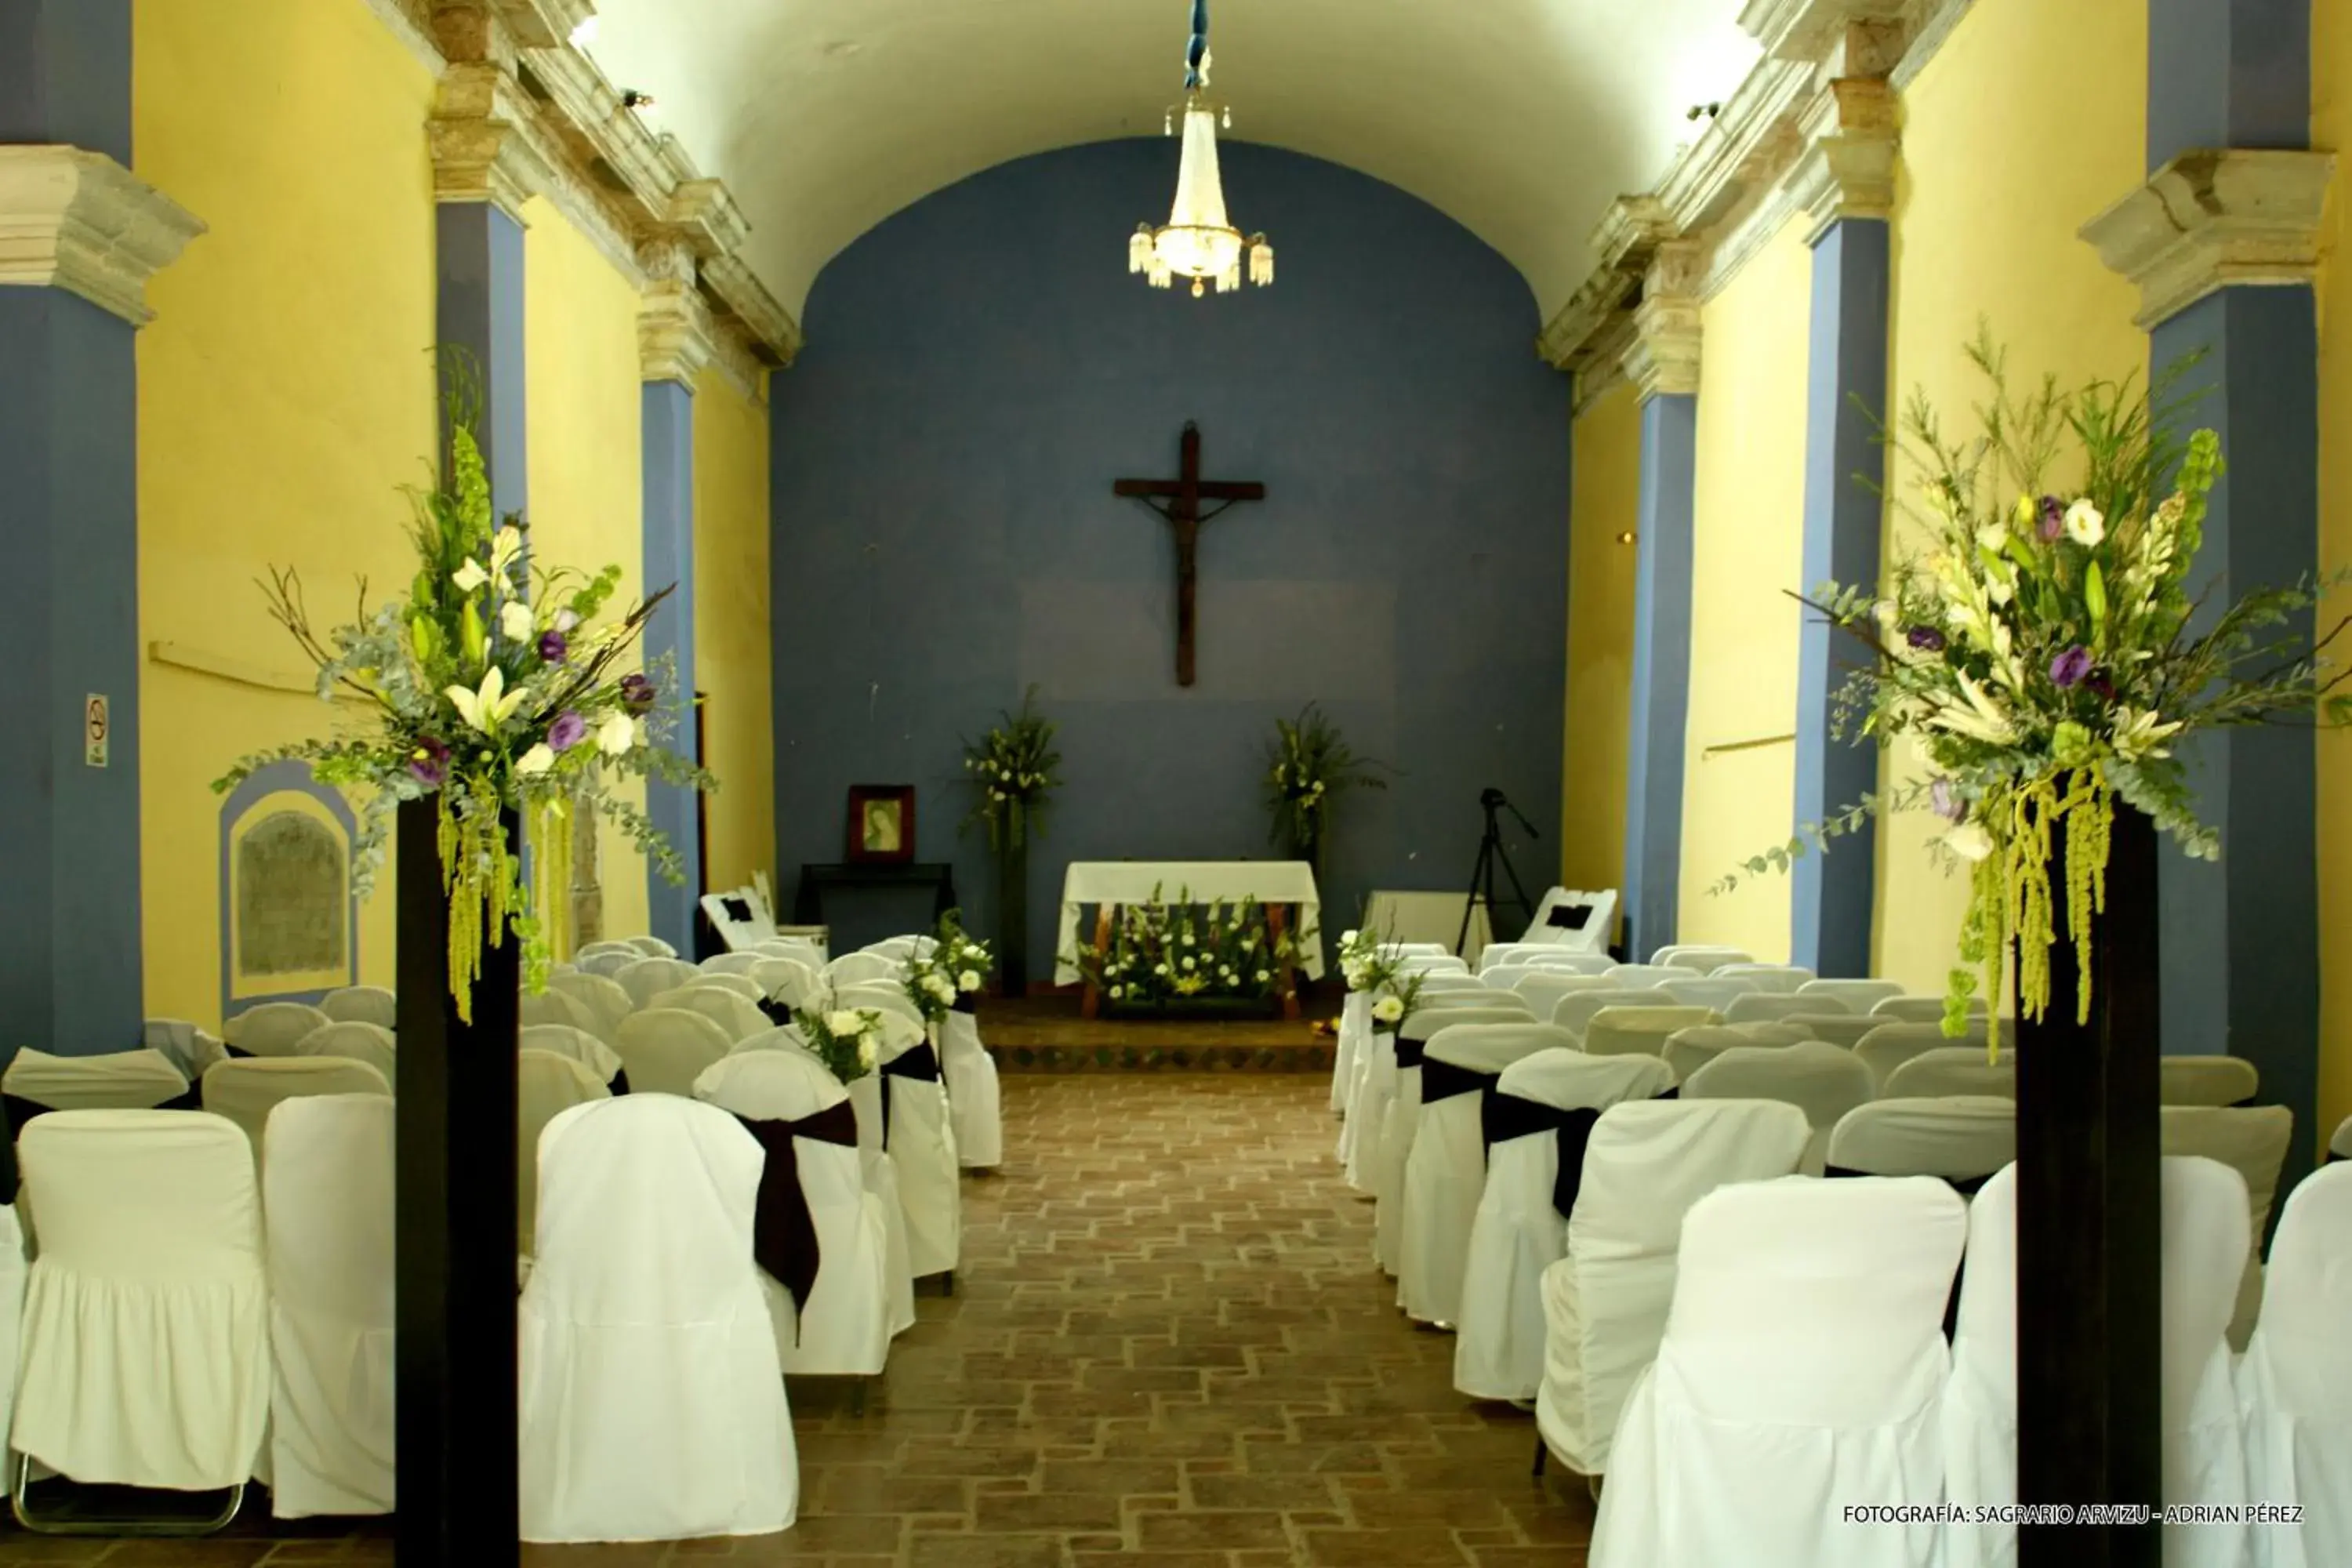 Banquet/Function facilities, Banquet Facilities in El Marques Hacienda